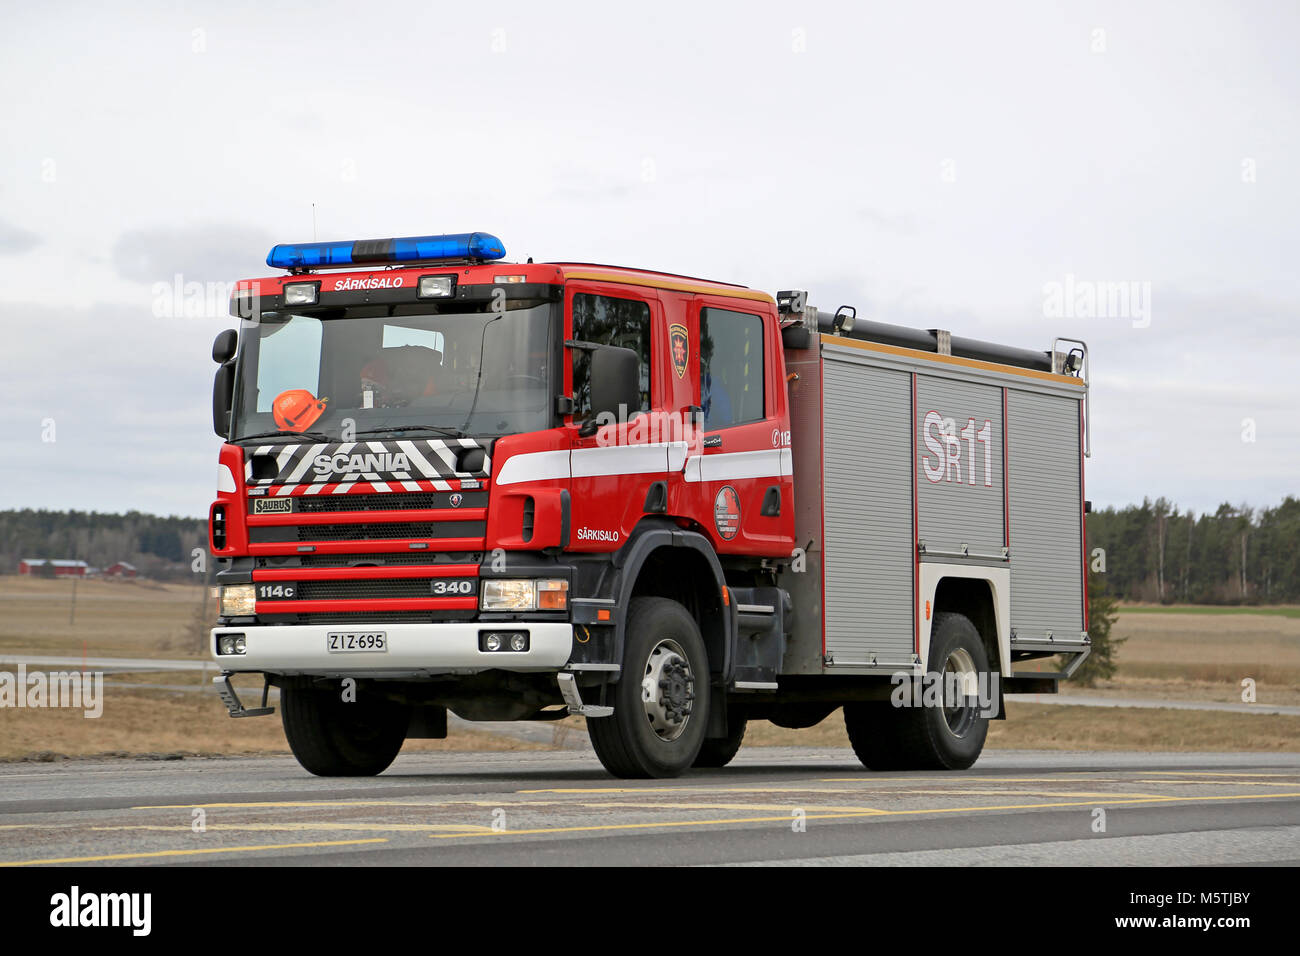 SALO, Finnland - 22. MÄRZ 2015: Scania 114C340 Fire Truck bewegt sich entlang der Autobahn 52. Scania Löschfahrzeuge wurden von finnischen Feuerwehren für o verwendet. Stockfoto